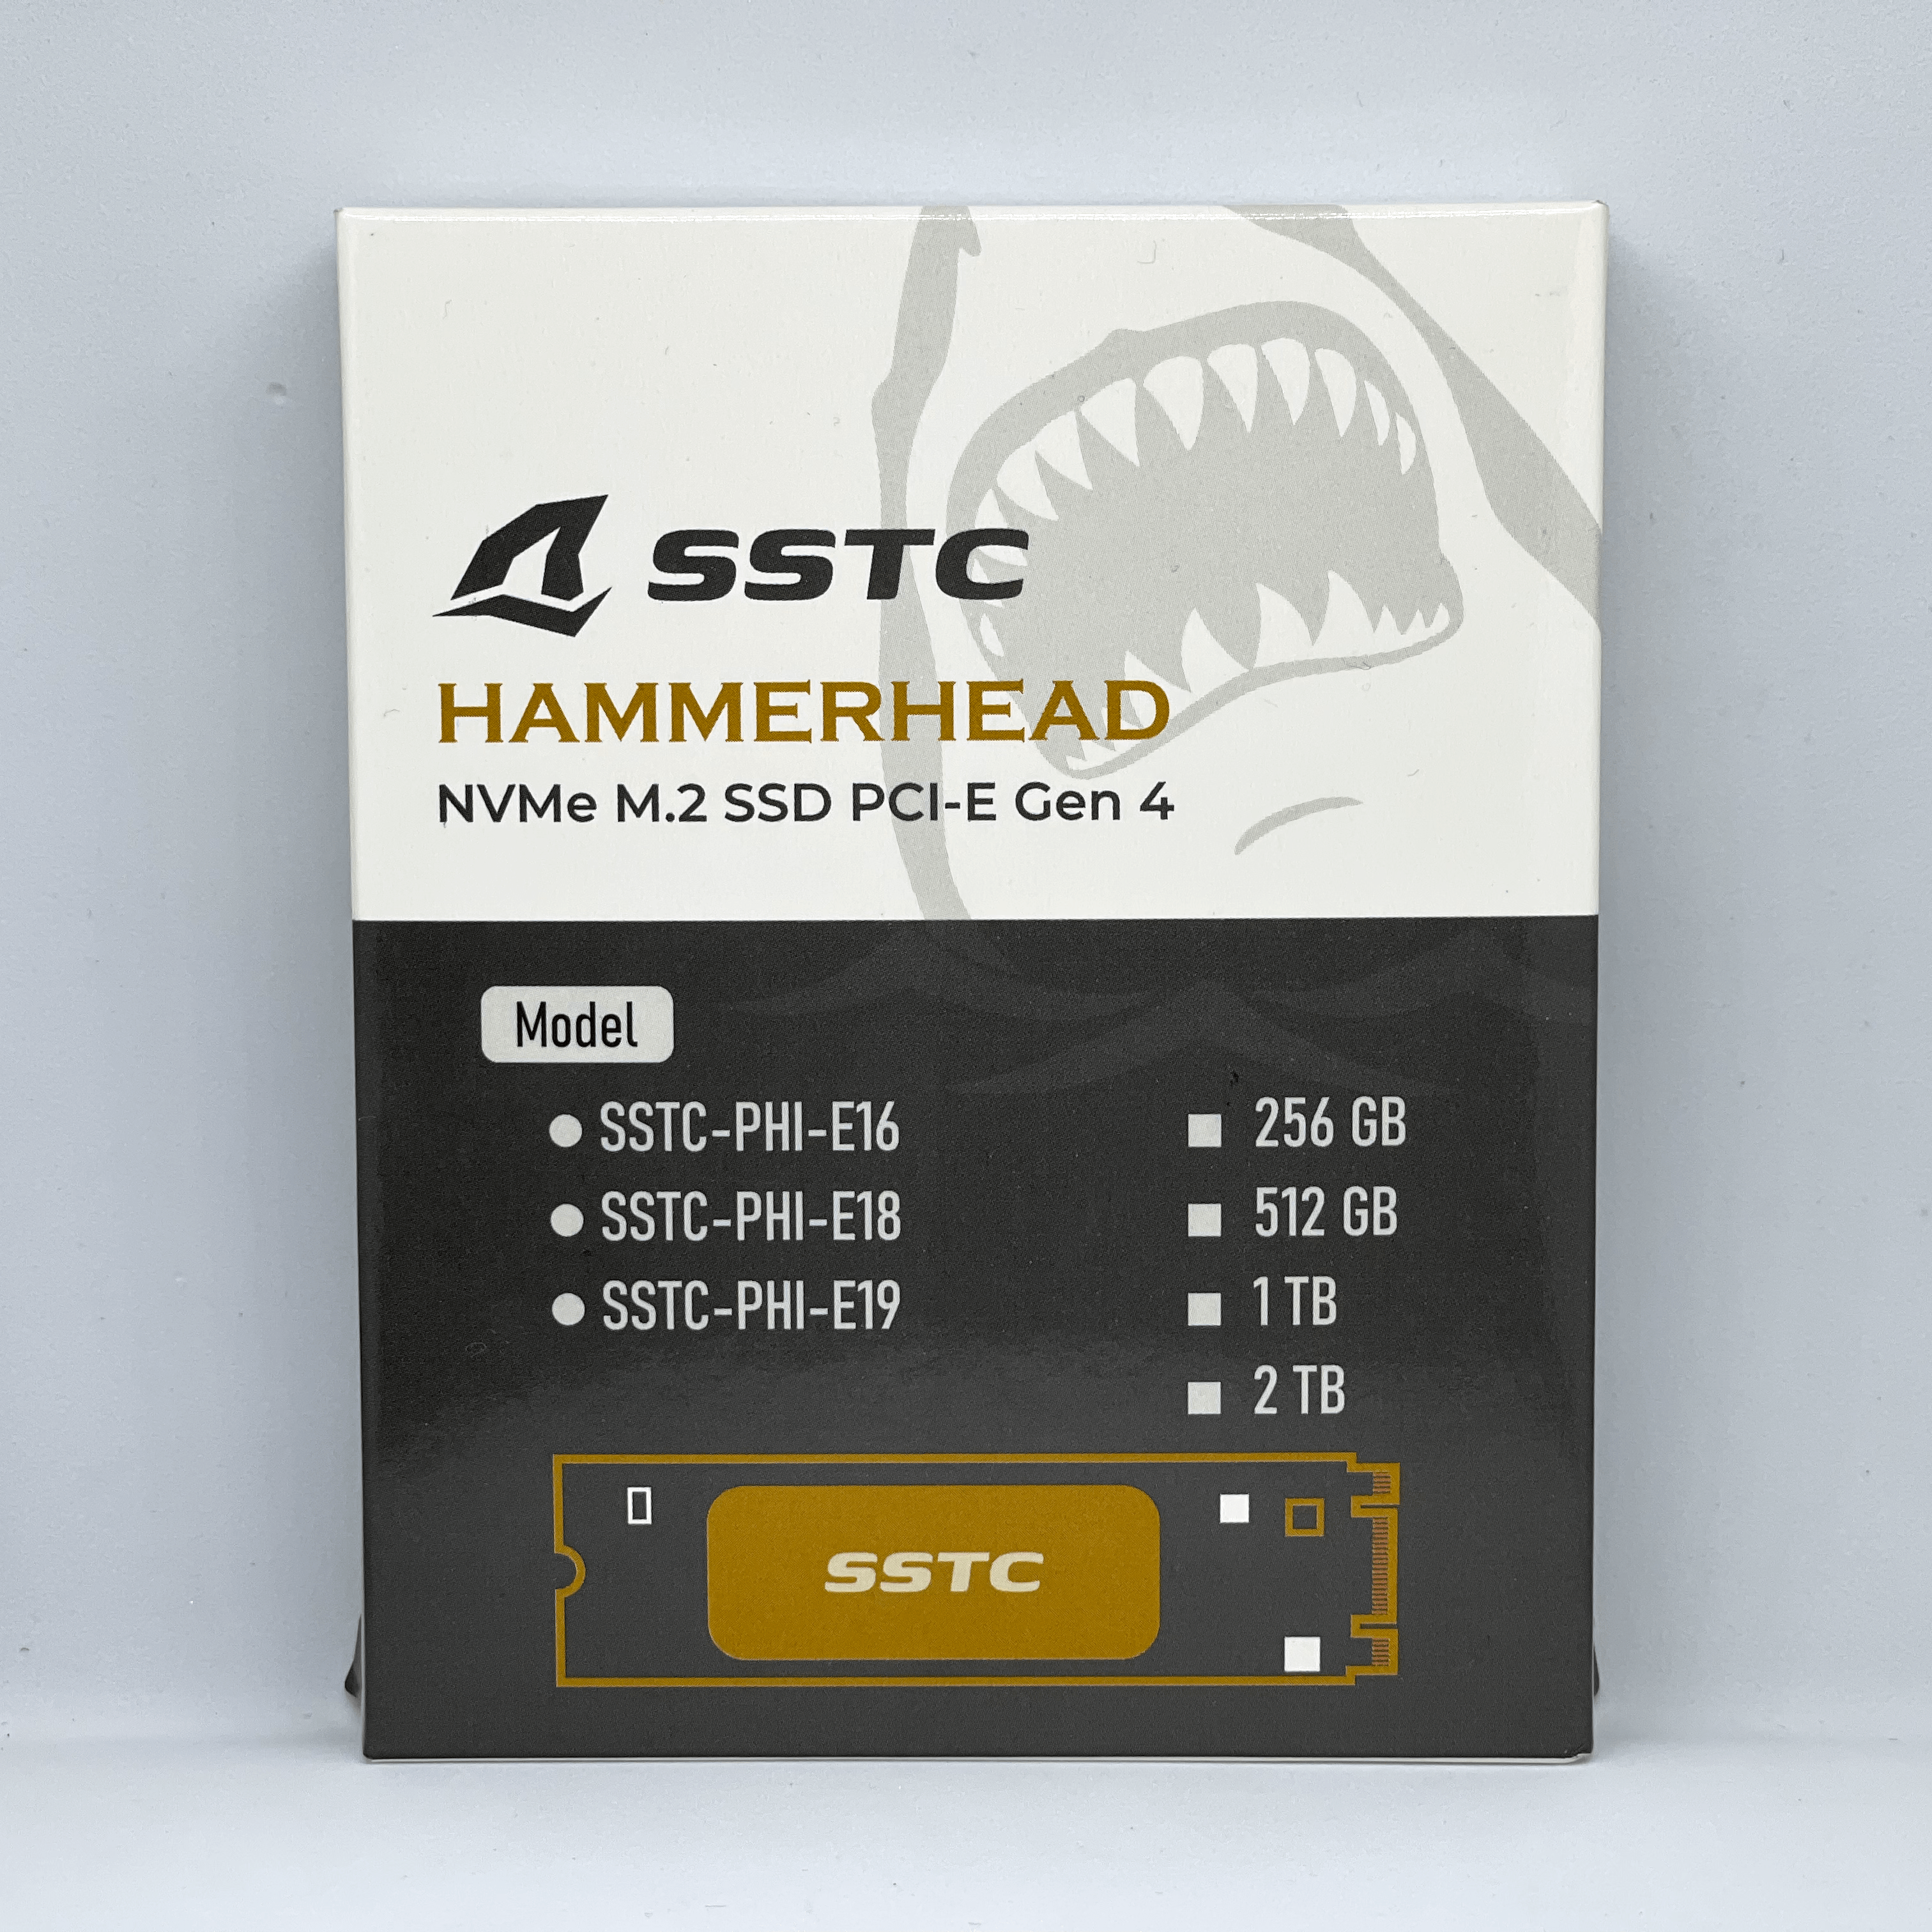 [Quick Test] SSTC Hammerhead E19 PCIe 4.0 x4 NVMe M.2 SSD 256GB/512GB – Thương hiệu Việt, tốc độ nhanh, nhiệt độ mát, khá ngon trong tầm giá dưới 2 triệu đồng - Image 2